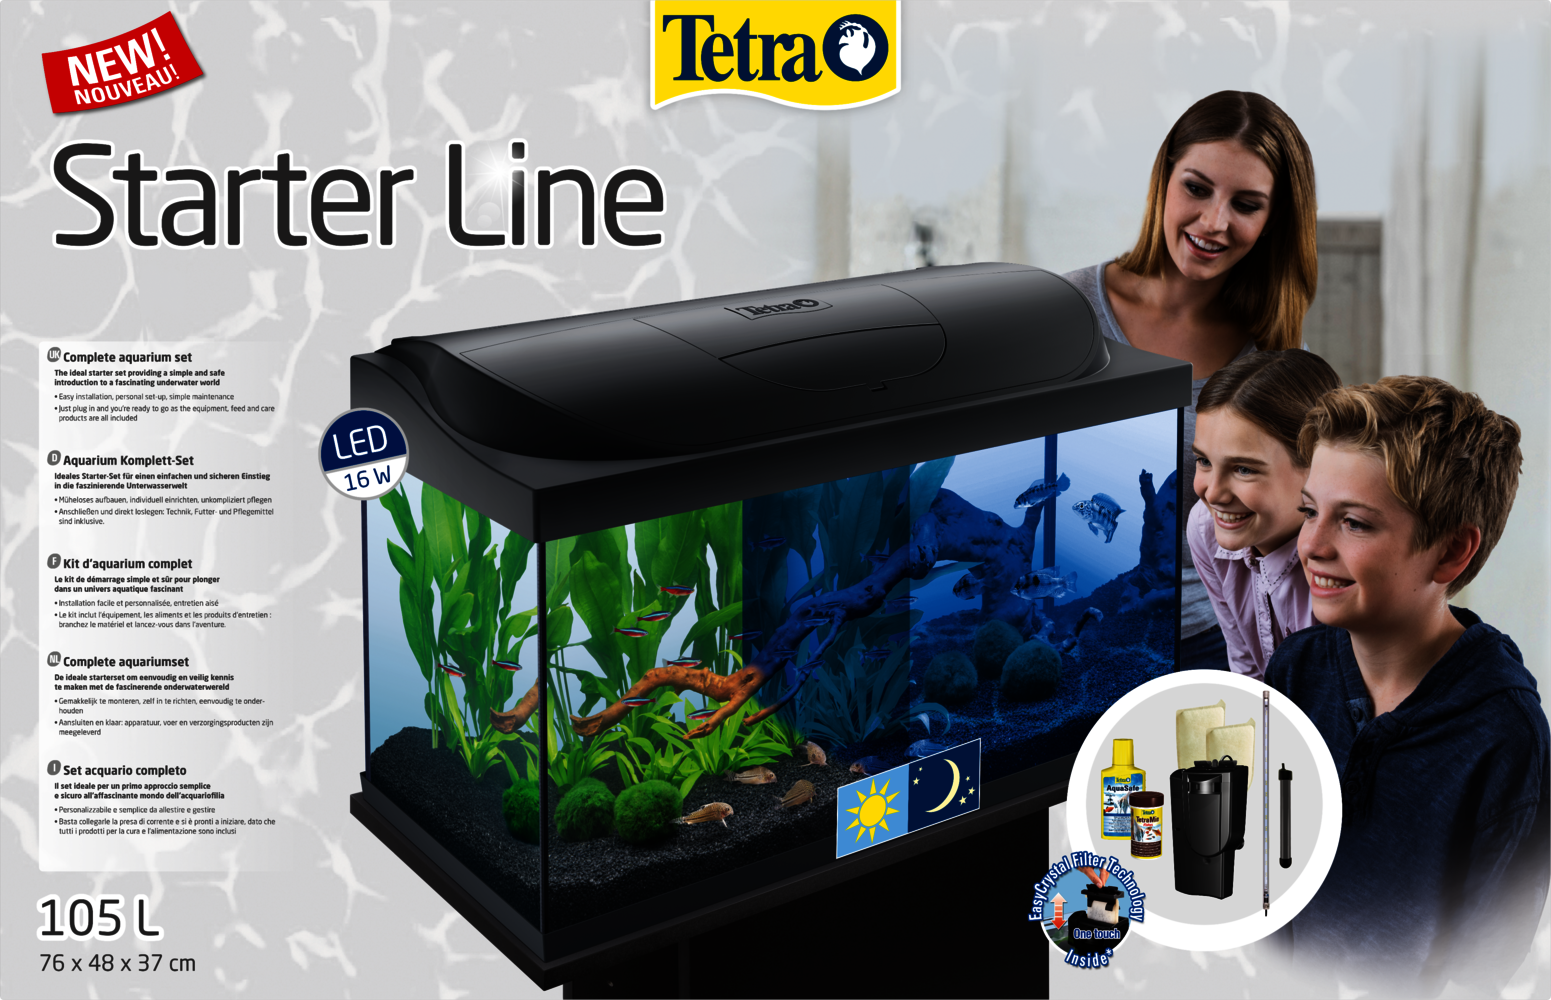 Tetra Starter Line LED 105 L Aquarium: Tetra